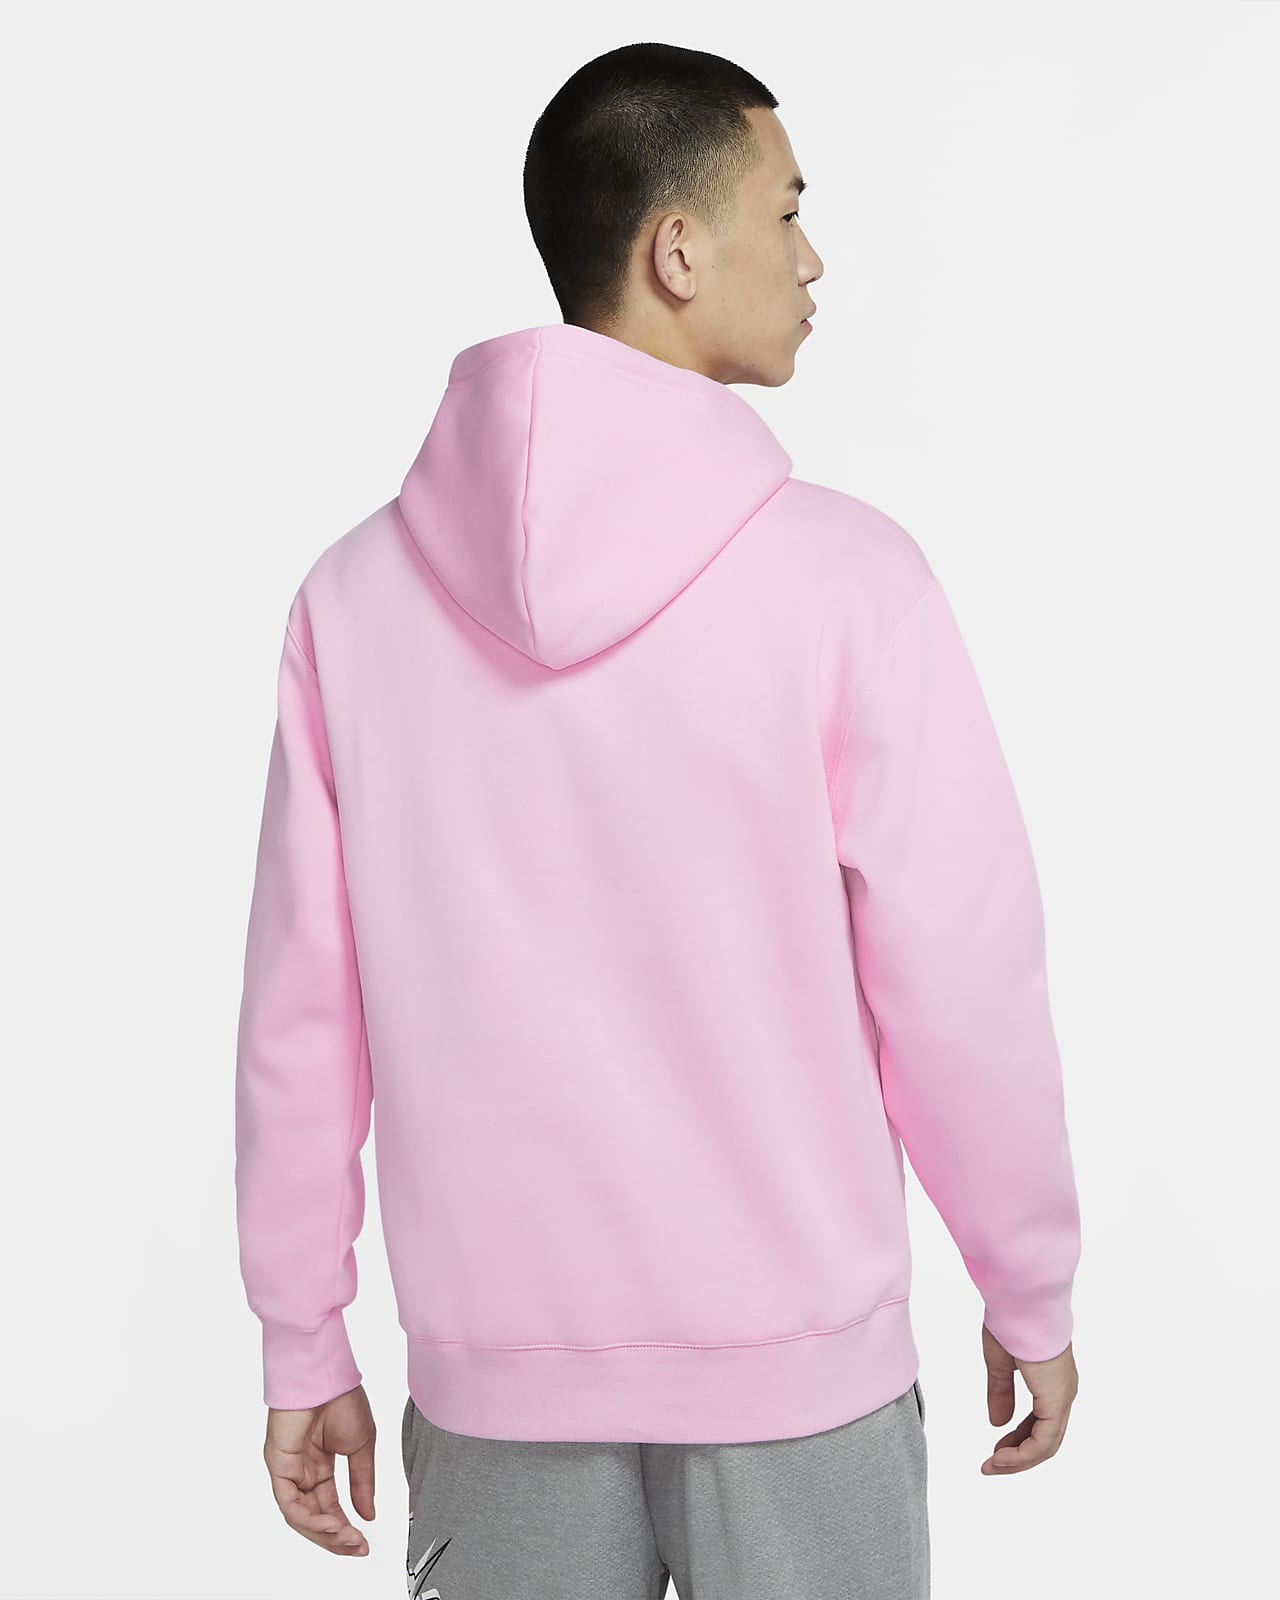 hoodie nike pink